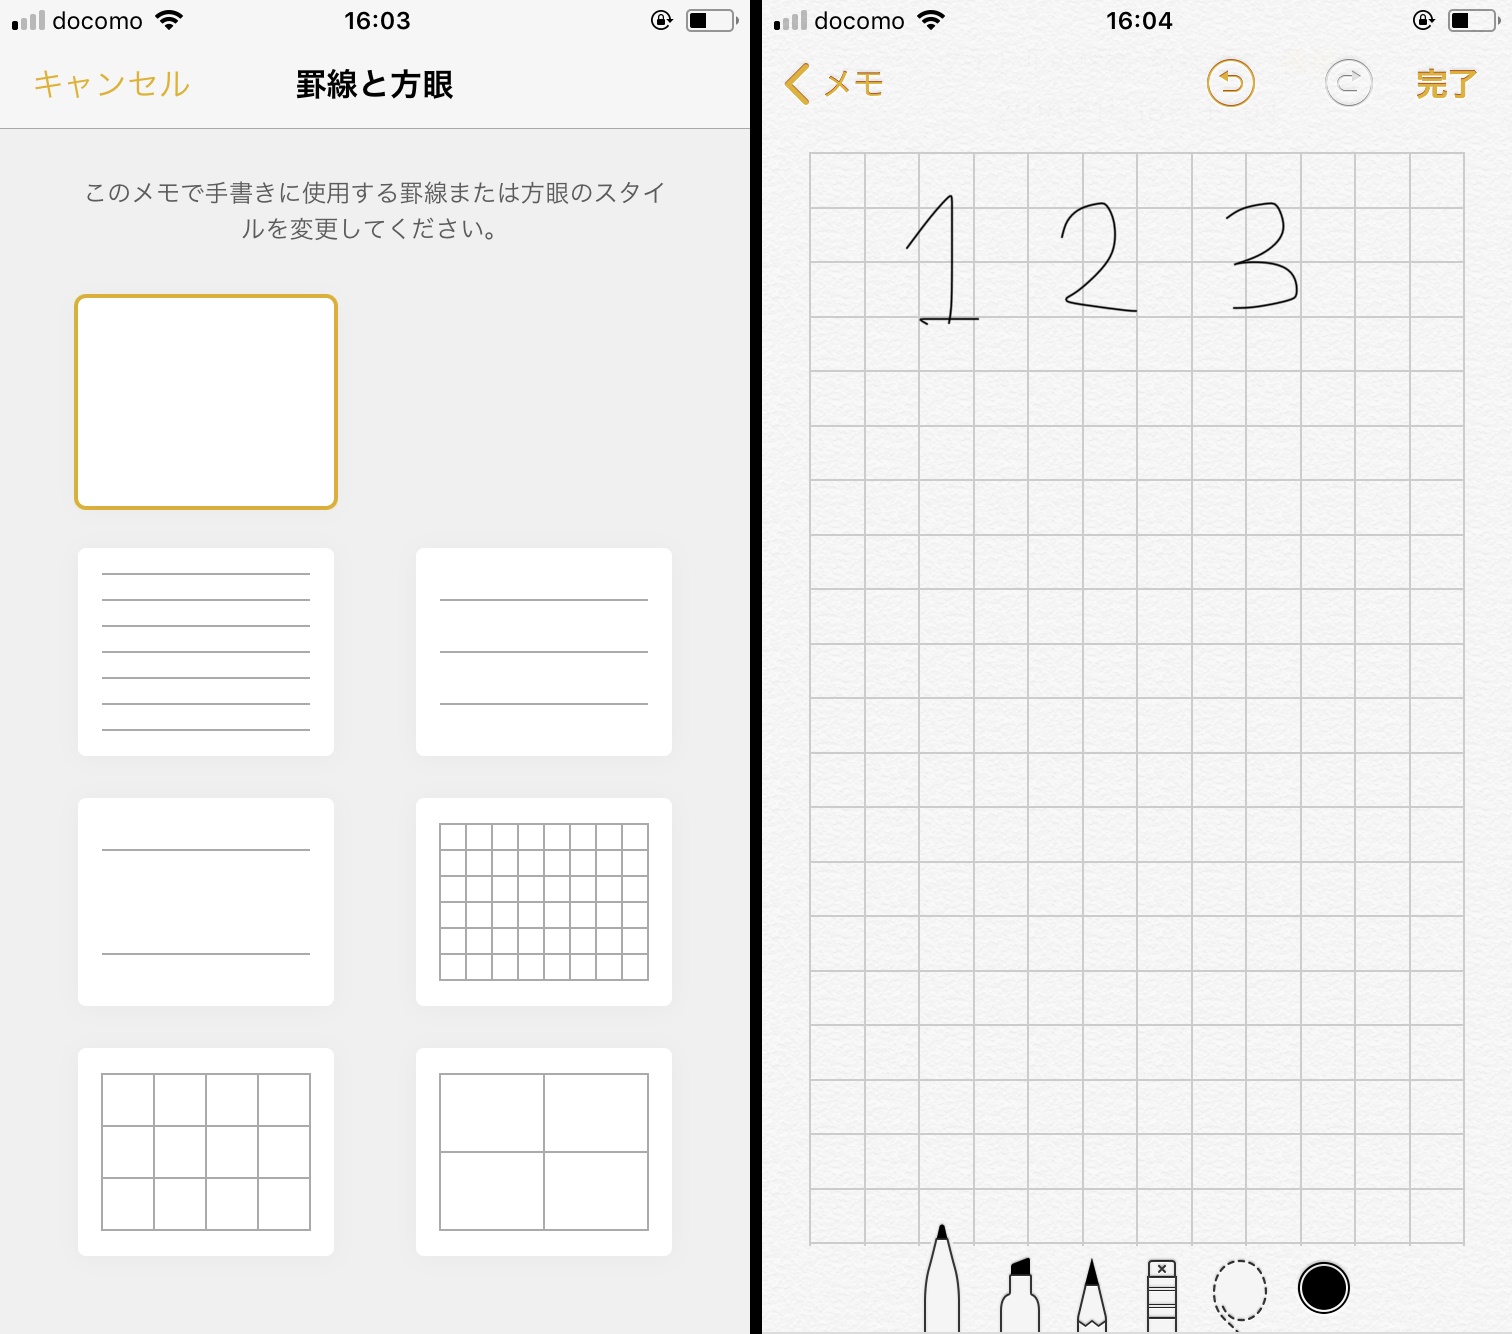 メモ の意外な活用術 入力画面に罫線を入れると手書き文字をきれいに書けます Iphone Tips Engadget 日本版